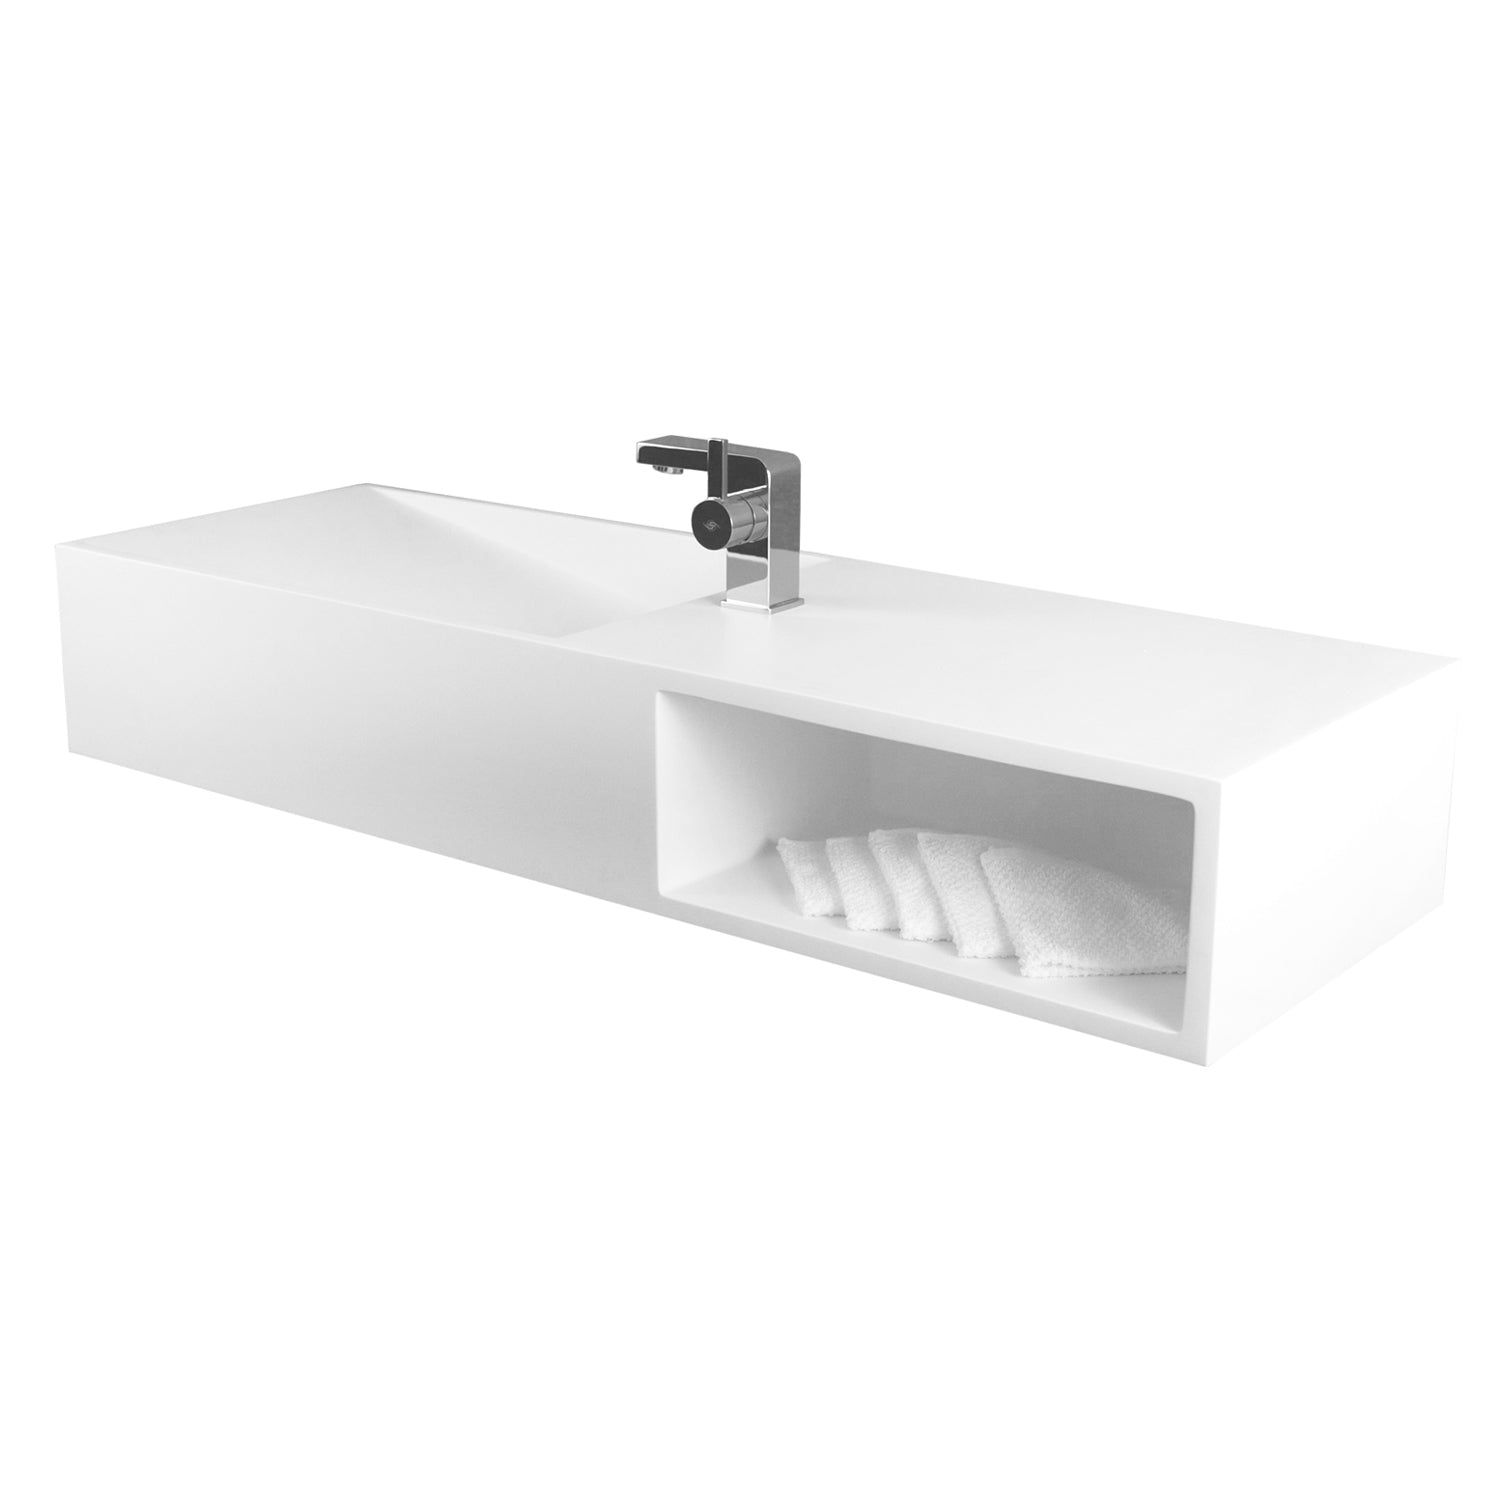 DAX Gabinete de lavabo de baño rectangular de superficie sólida de un solo tazón, acabado blanco mate, 47-1/4 x 16-1/2 x 7-7/8 pulgadas (DAX-AB-1365)